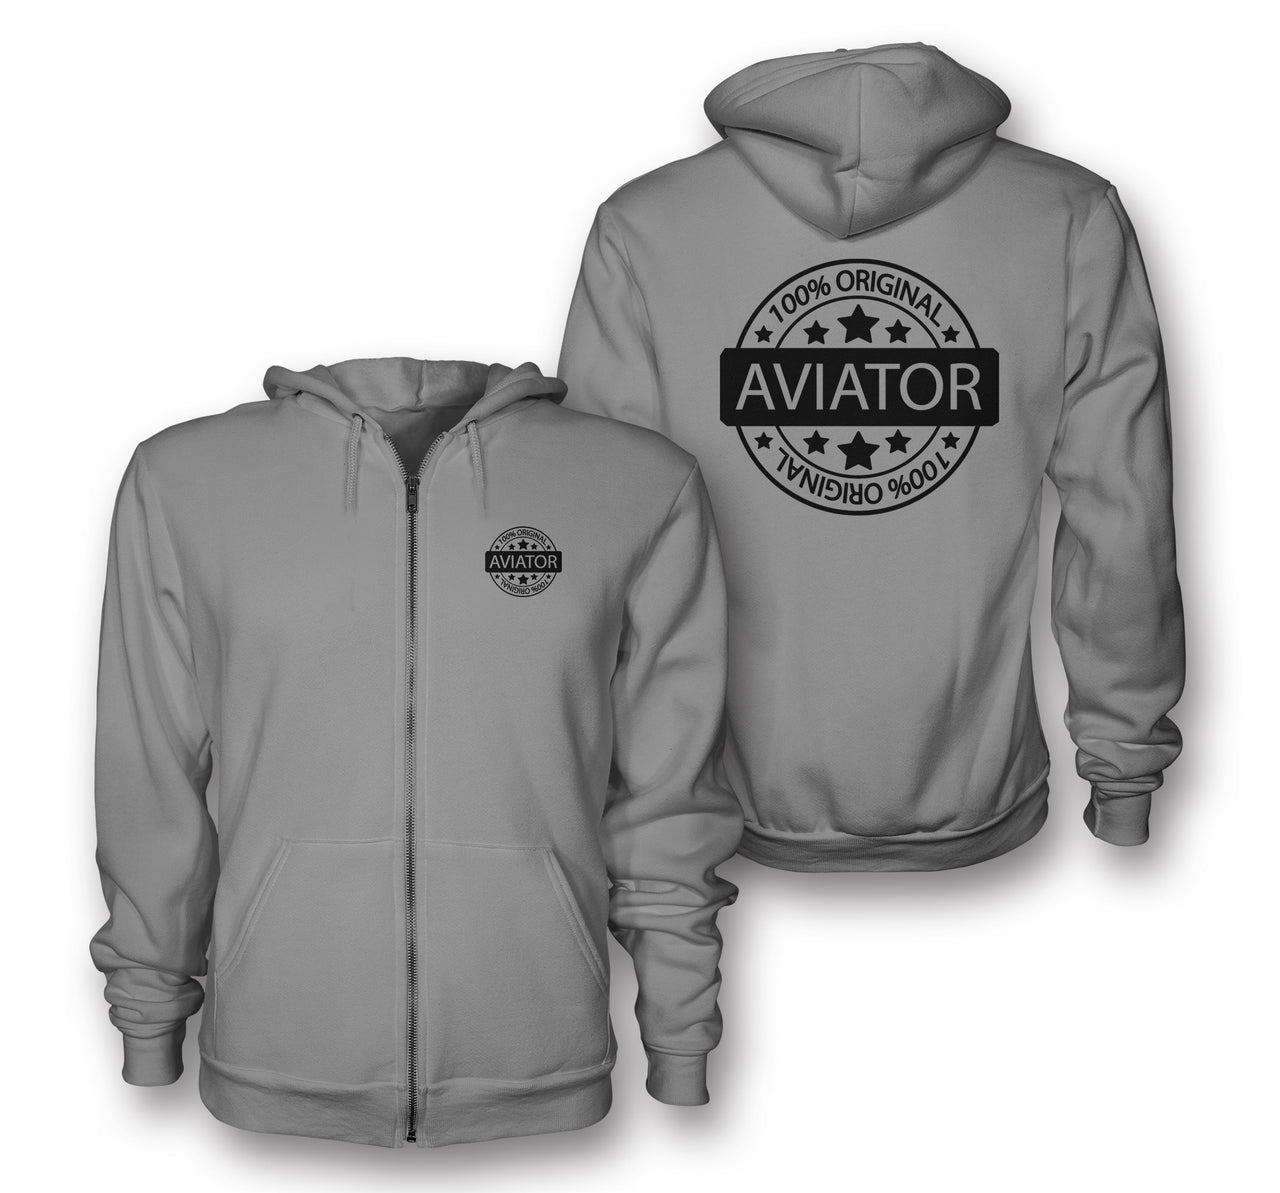 %100 Original Aviator Designed Zipped Hoodies